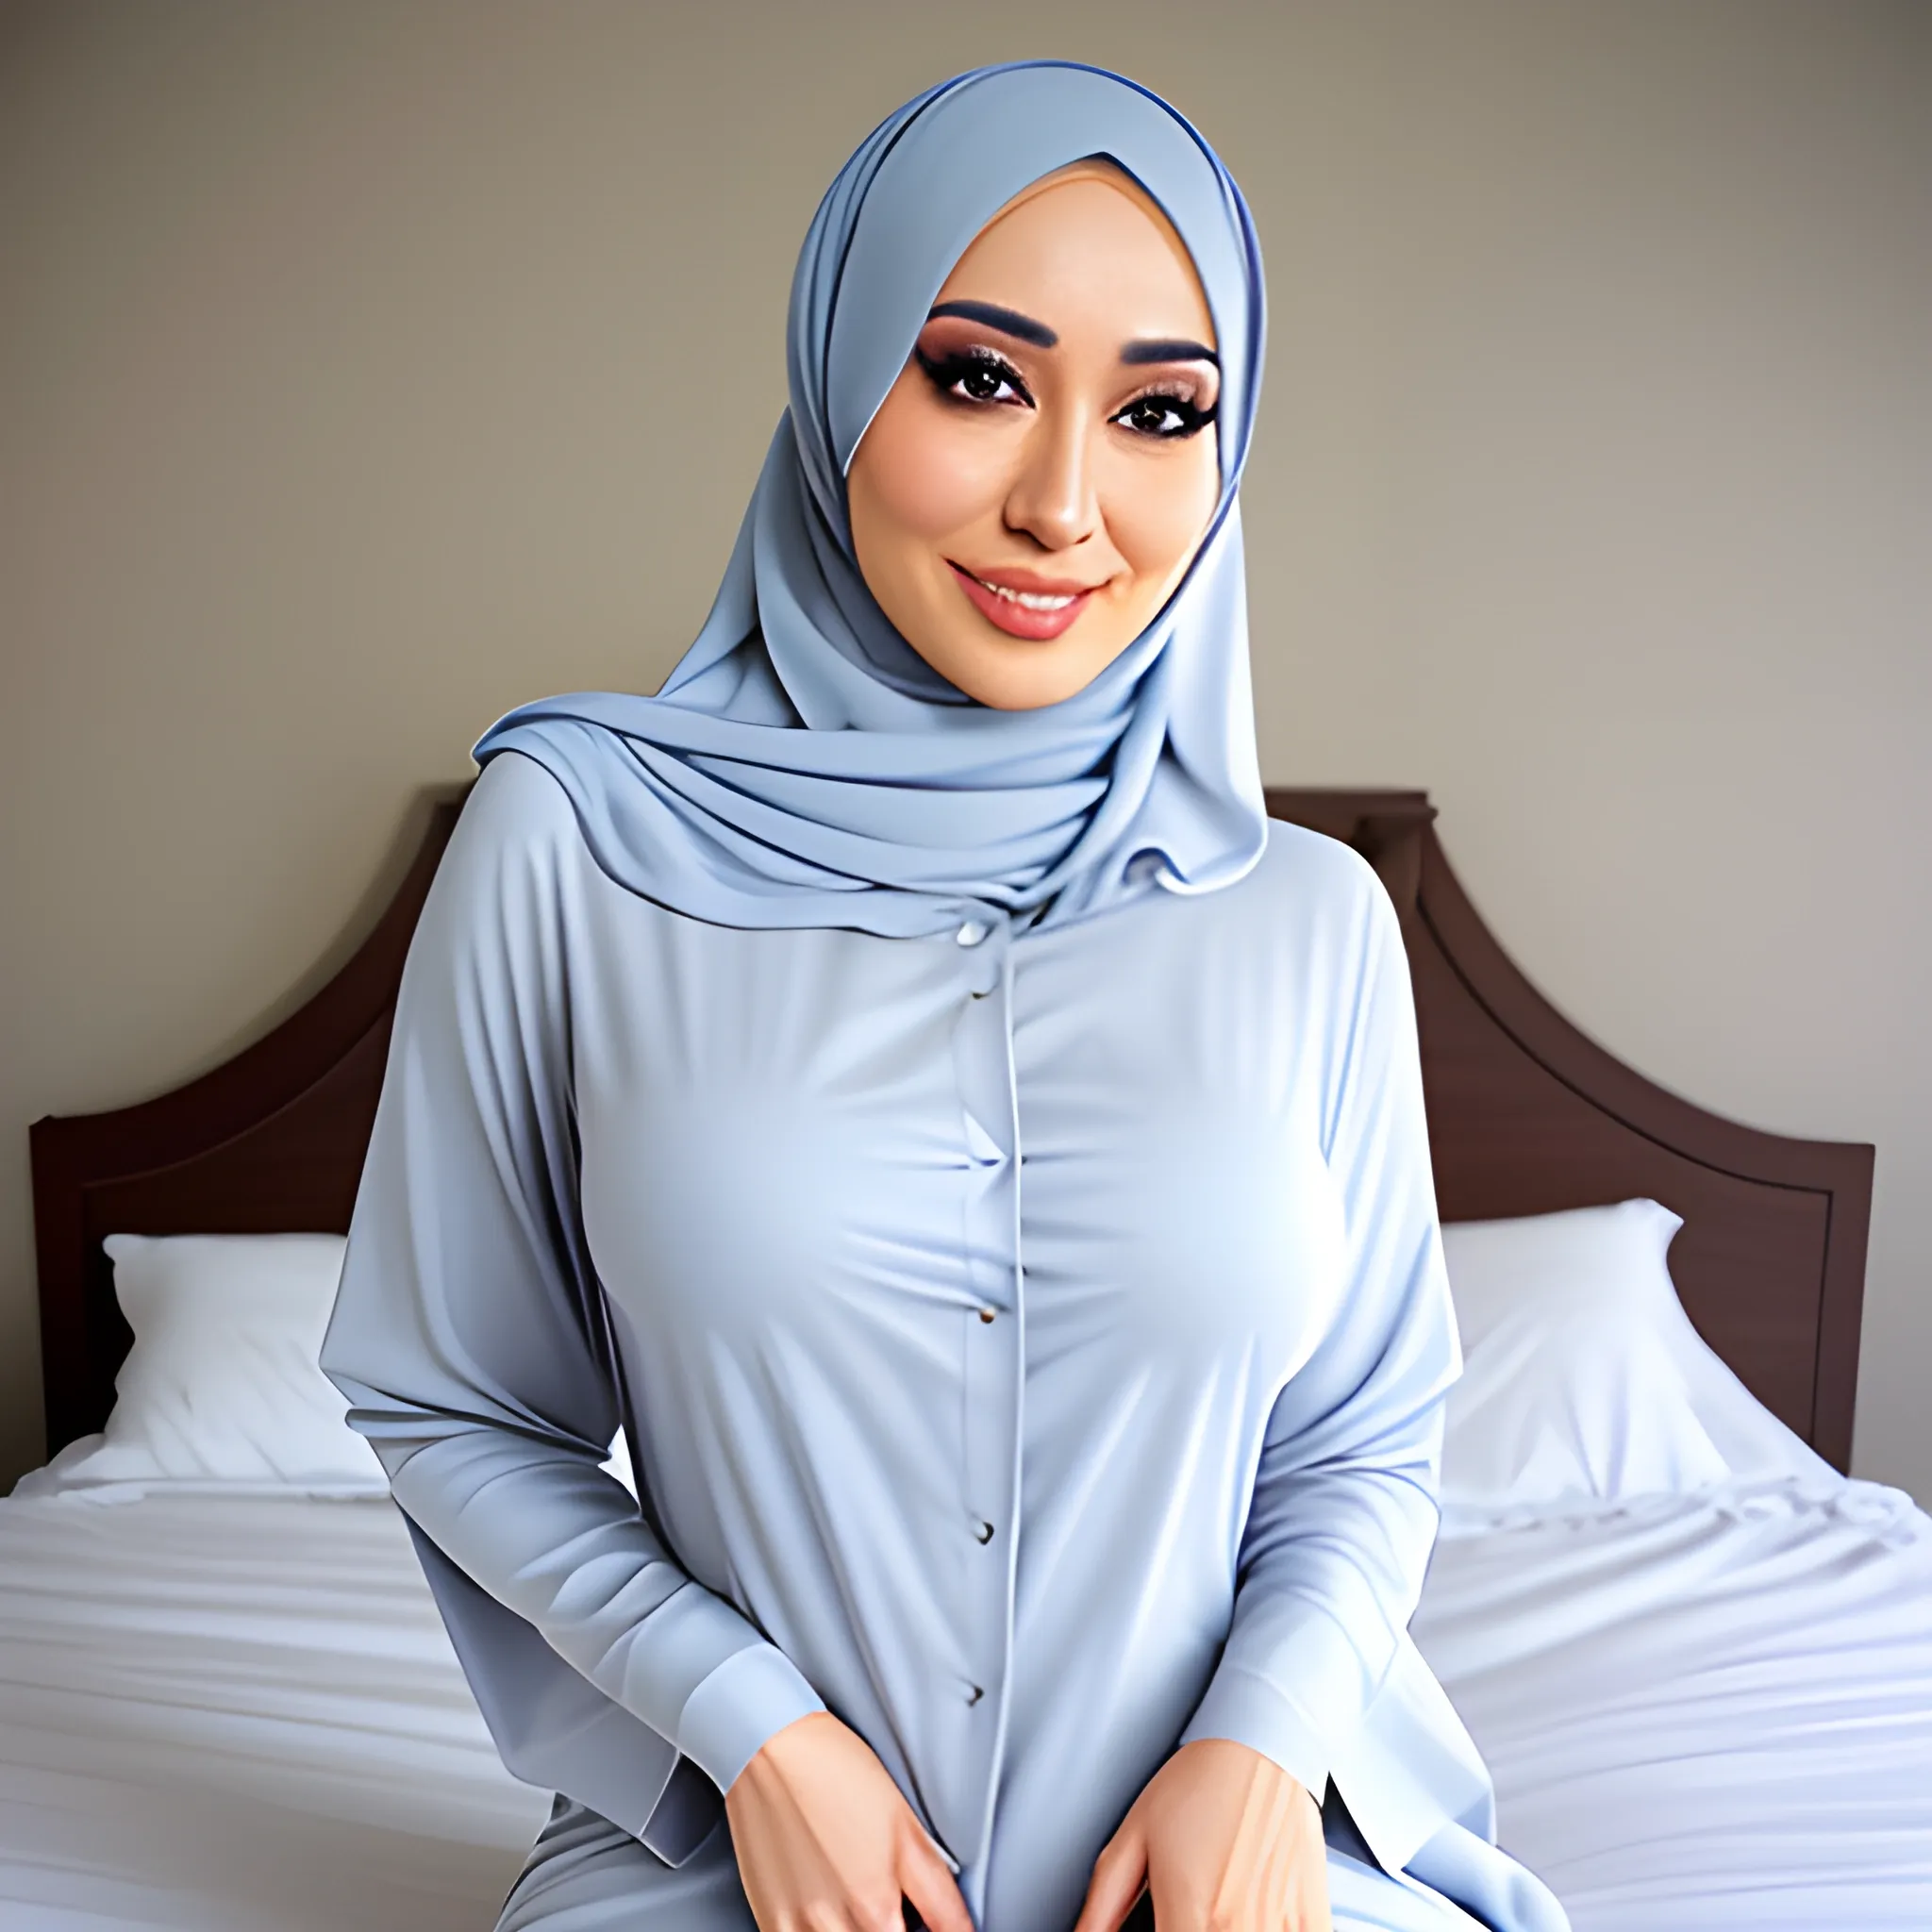 Hijab Girl In Bed Arthub Ai